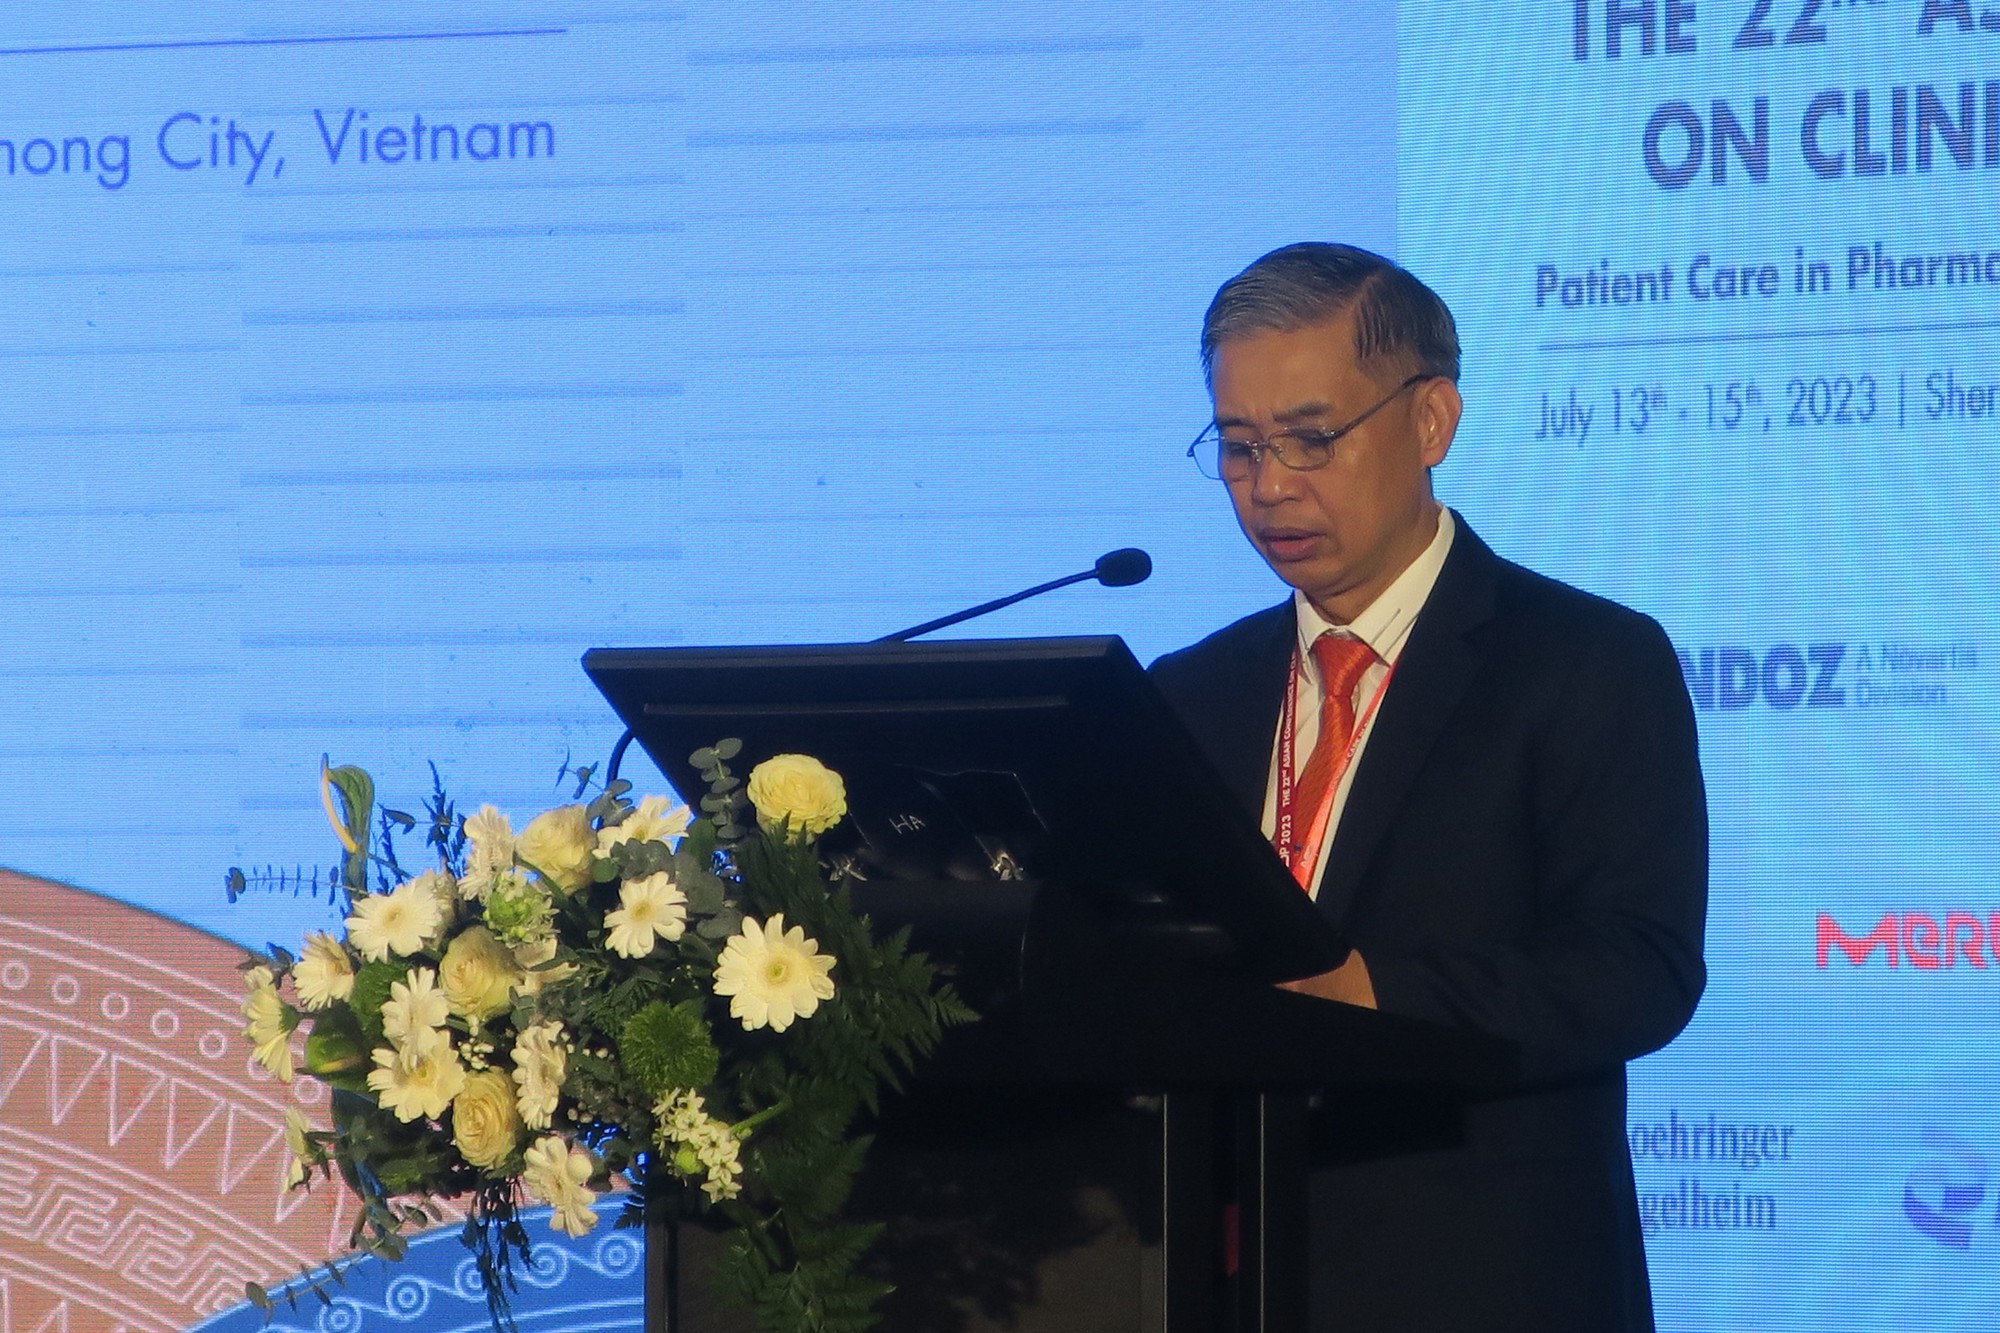 Hội nghị Dược lâm sàng Châu Á lần thứ 22 tập trung chăm sóc người bệnh trong thực hành và đào tạo - Ảnh 4.